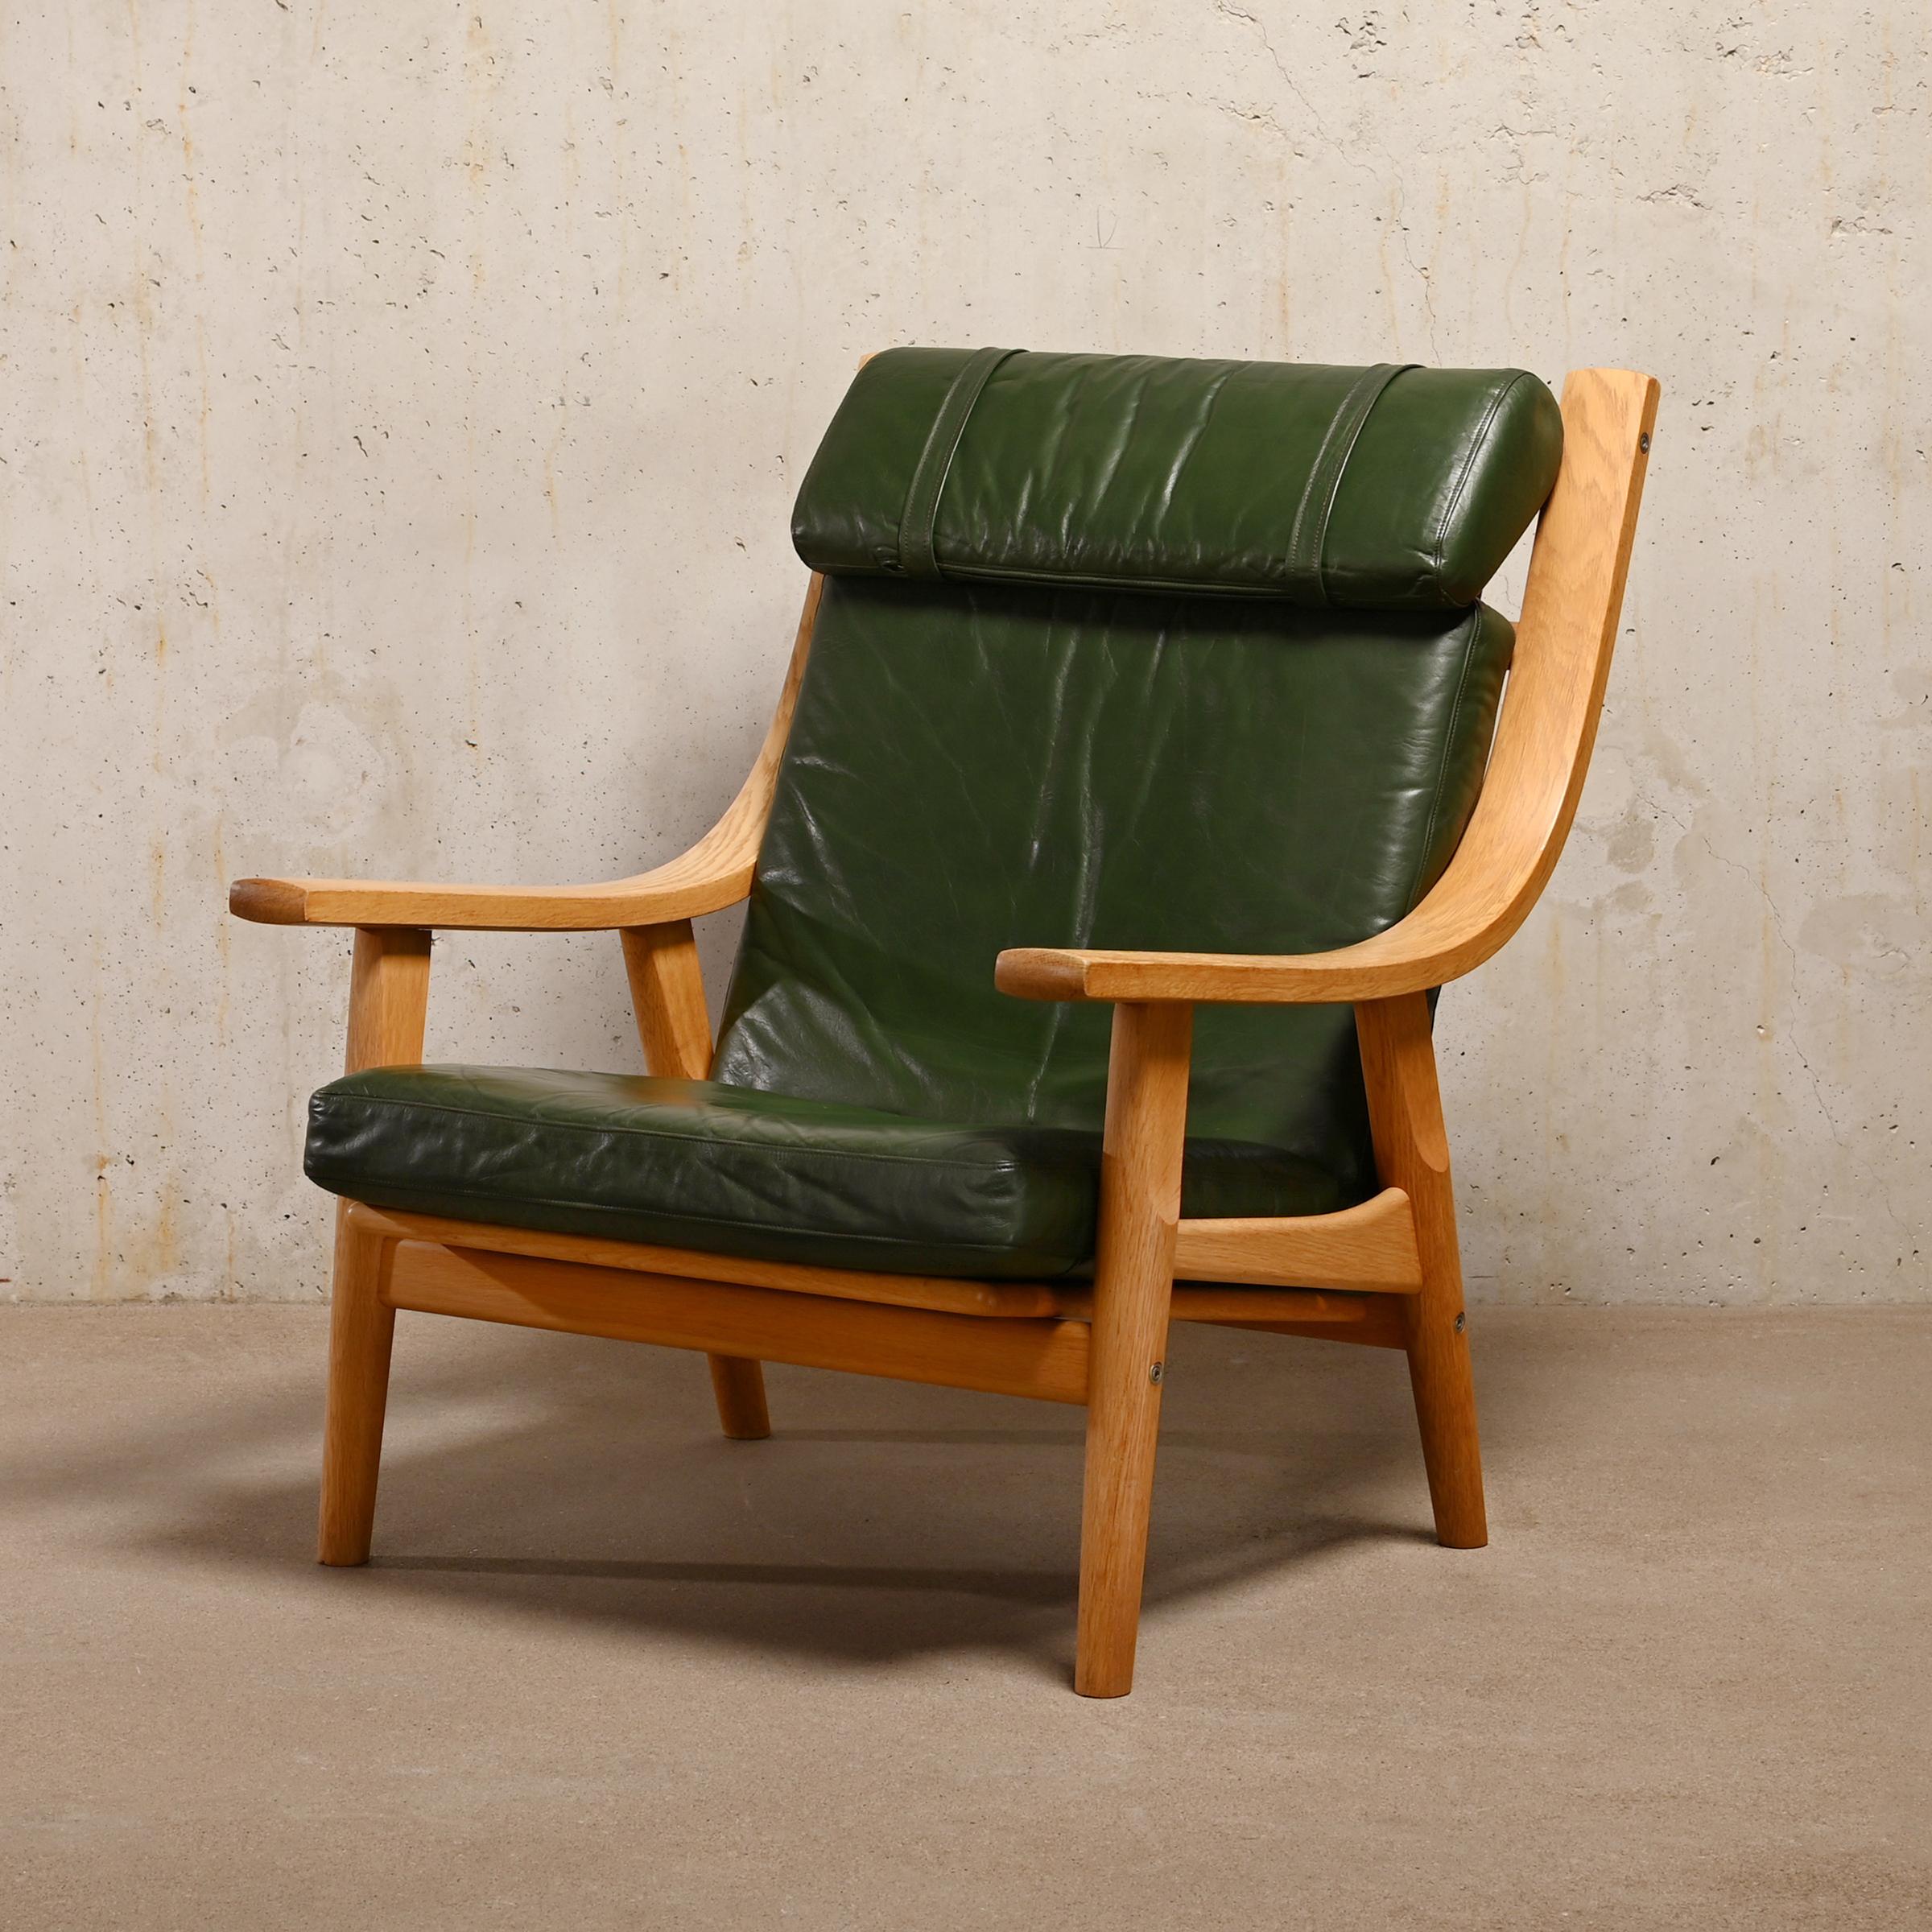 Excellent exemple de chaise longue Hans J. Wegner GE-530 et de l'ottoman assorti pour GETAMA, Danemark. Cadre en chêne massif de haute qualité avec coussins en cuir vert forêt d'origine soutenus par des sangles en caoutchouc. La chaise et l'ottoman